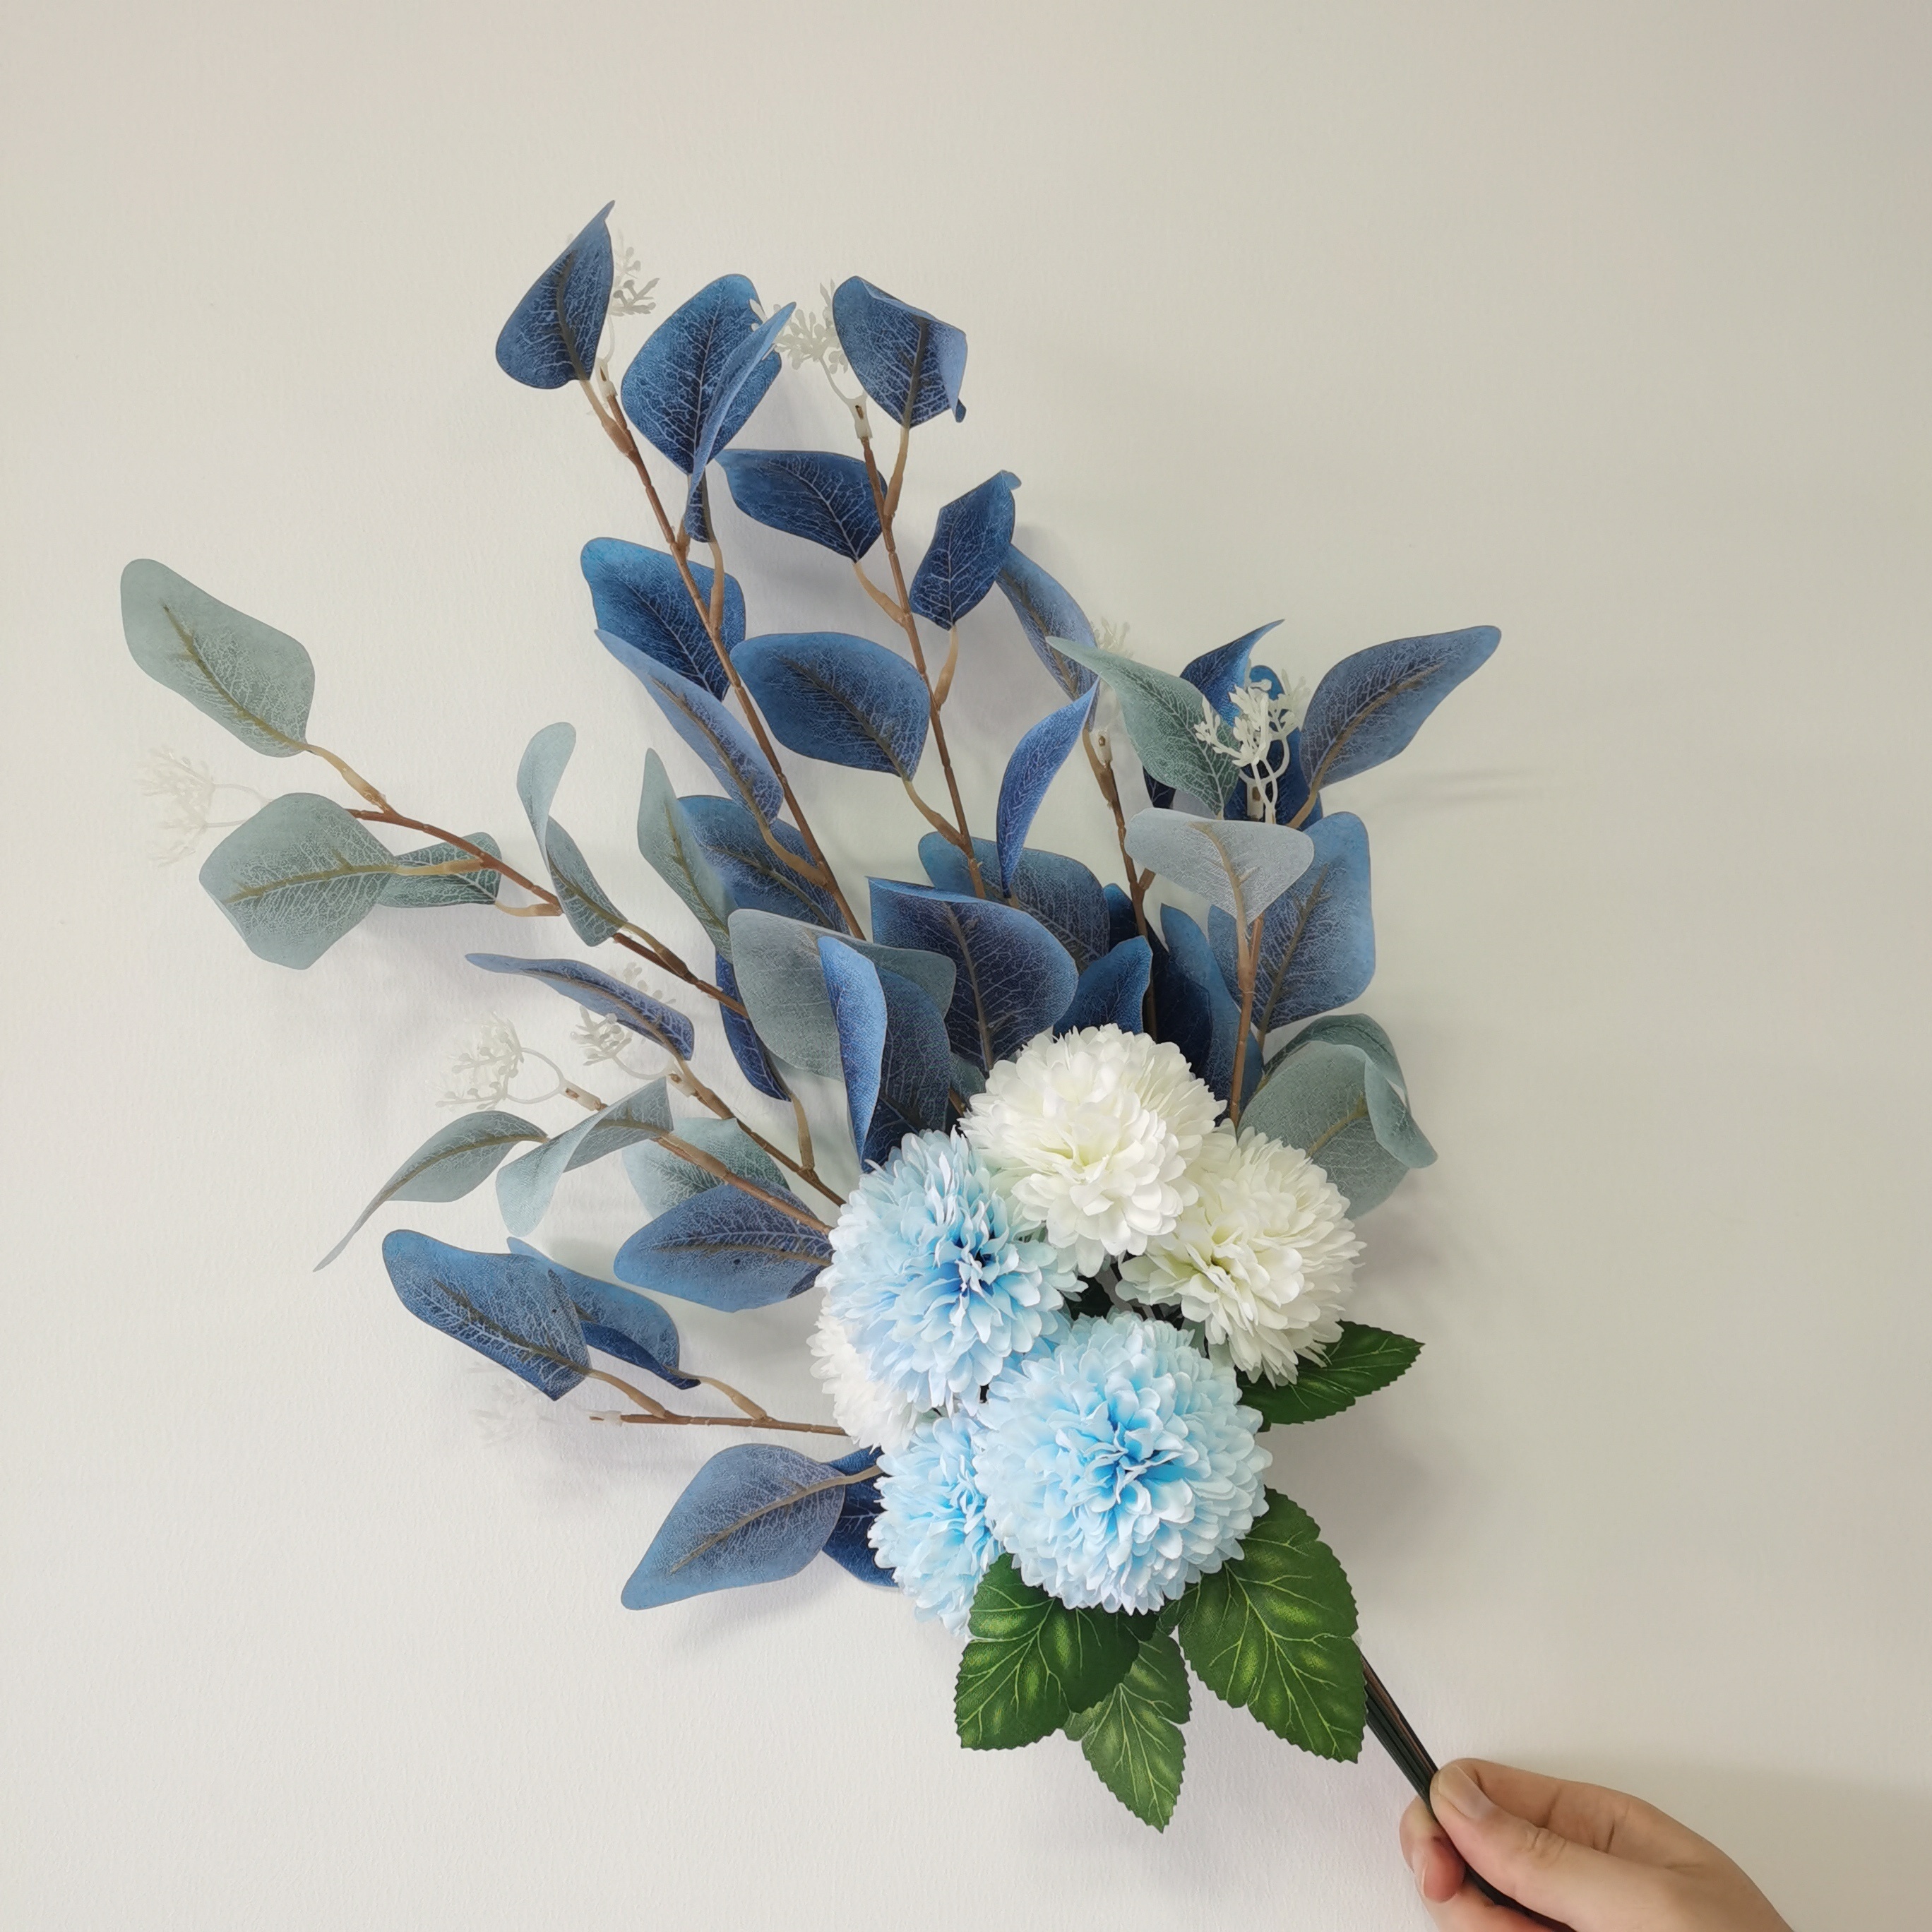 KISLOHUM Flores de hortensias artificiales de cabeza blanca pura, 10 flores  de seda de hortensias falsas para centros de mesa de boda, ramos de – Yaxa  Colombia